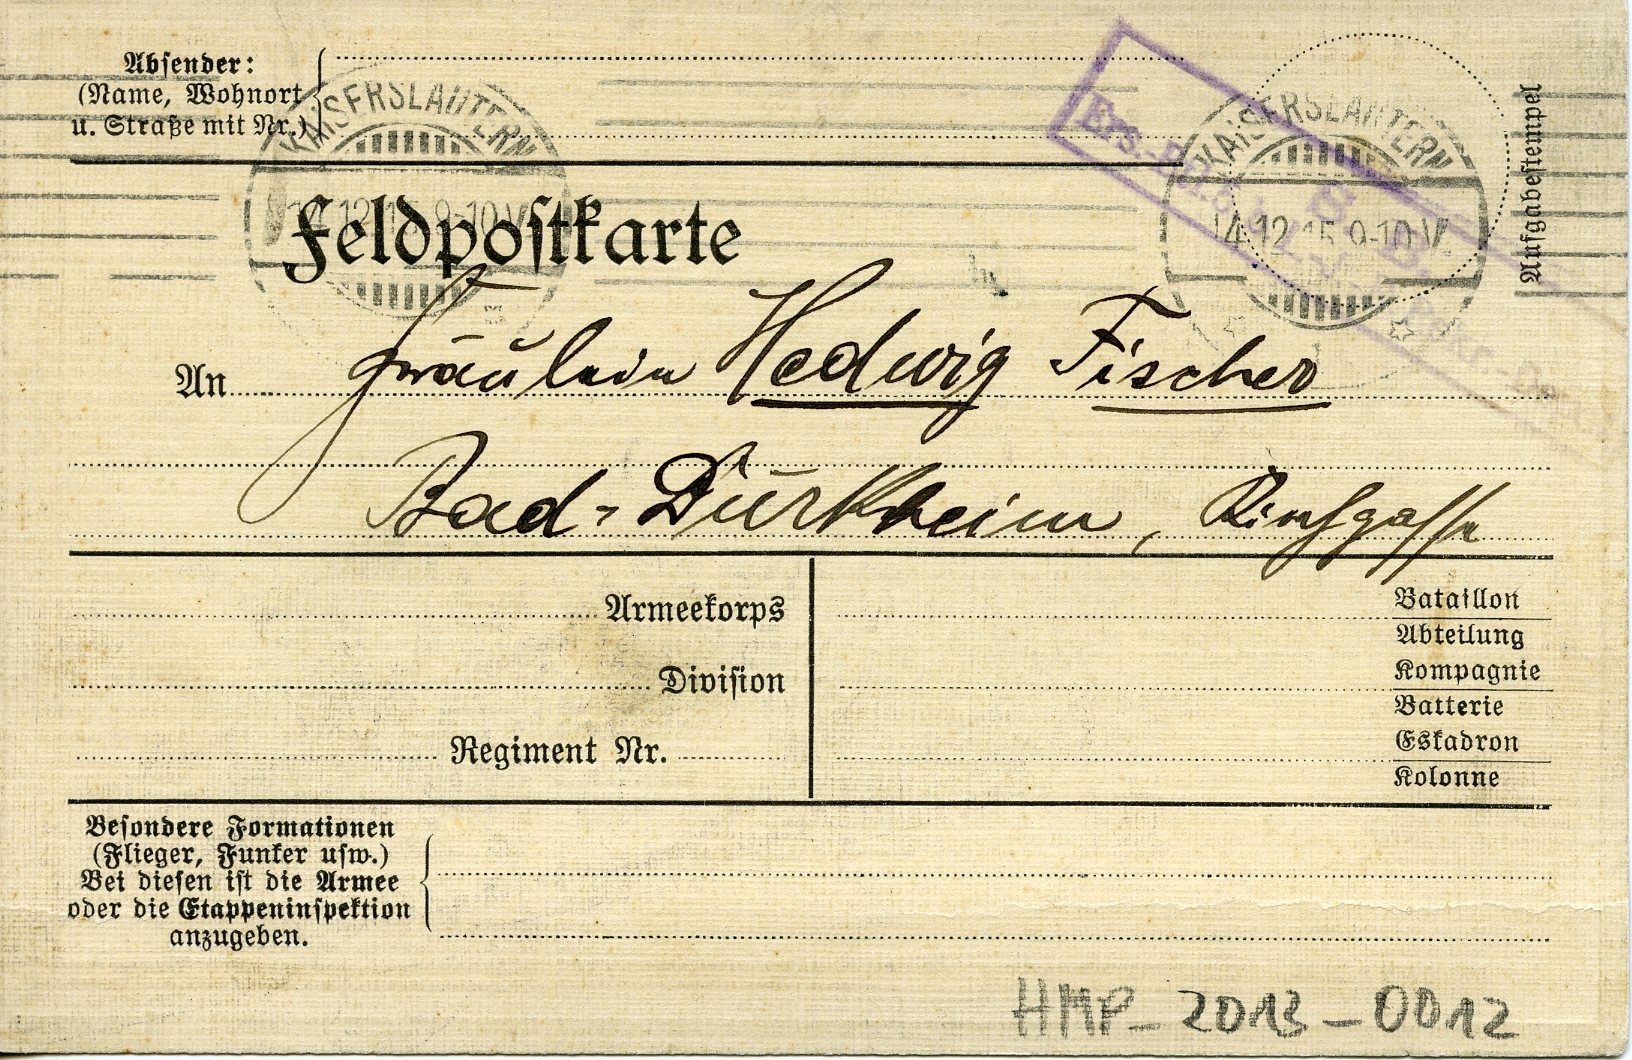 Feldpostkarte aus Kaiserslautern 1915 (Historisches Museum der Pfalz, Speyer CC BY)